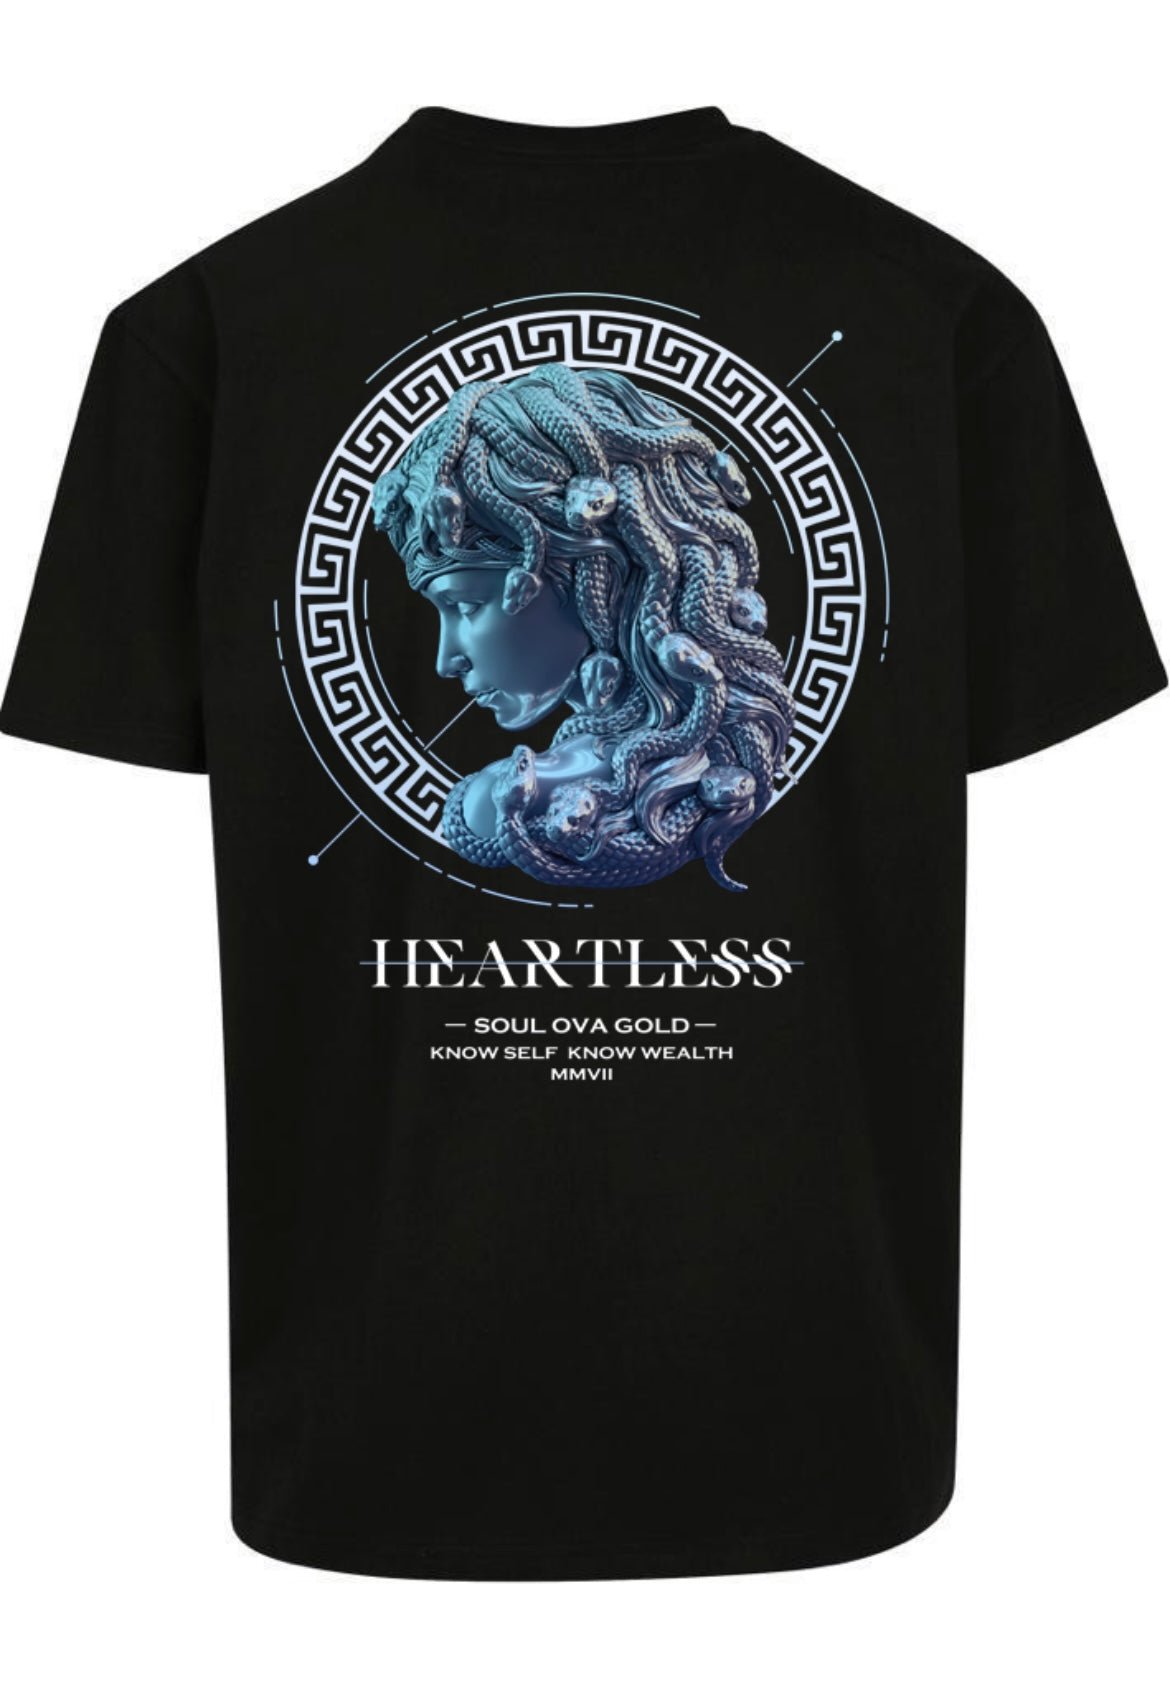 Soul Ova Gold Apparel & Accessories Heartless(Black w/Blue Sapphire Print) Heavyweight T-shirt